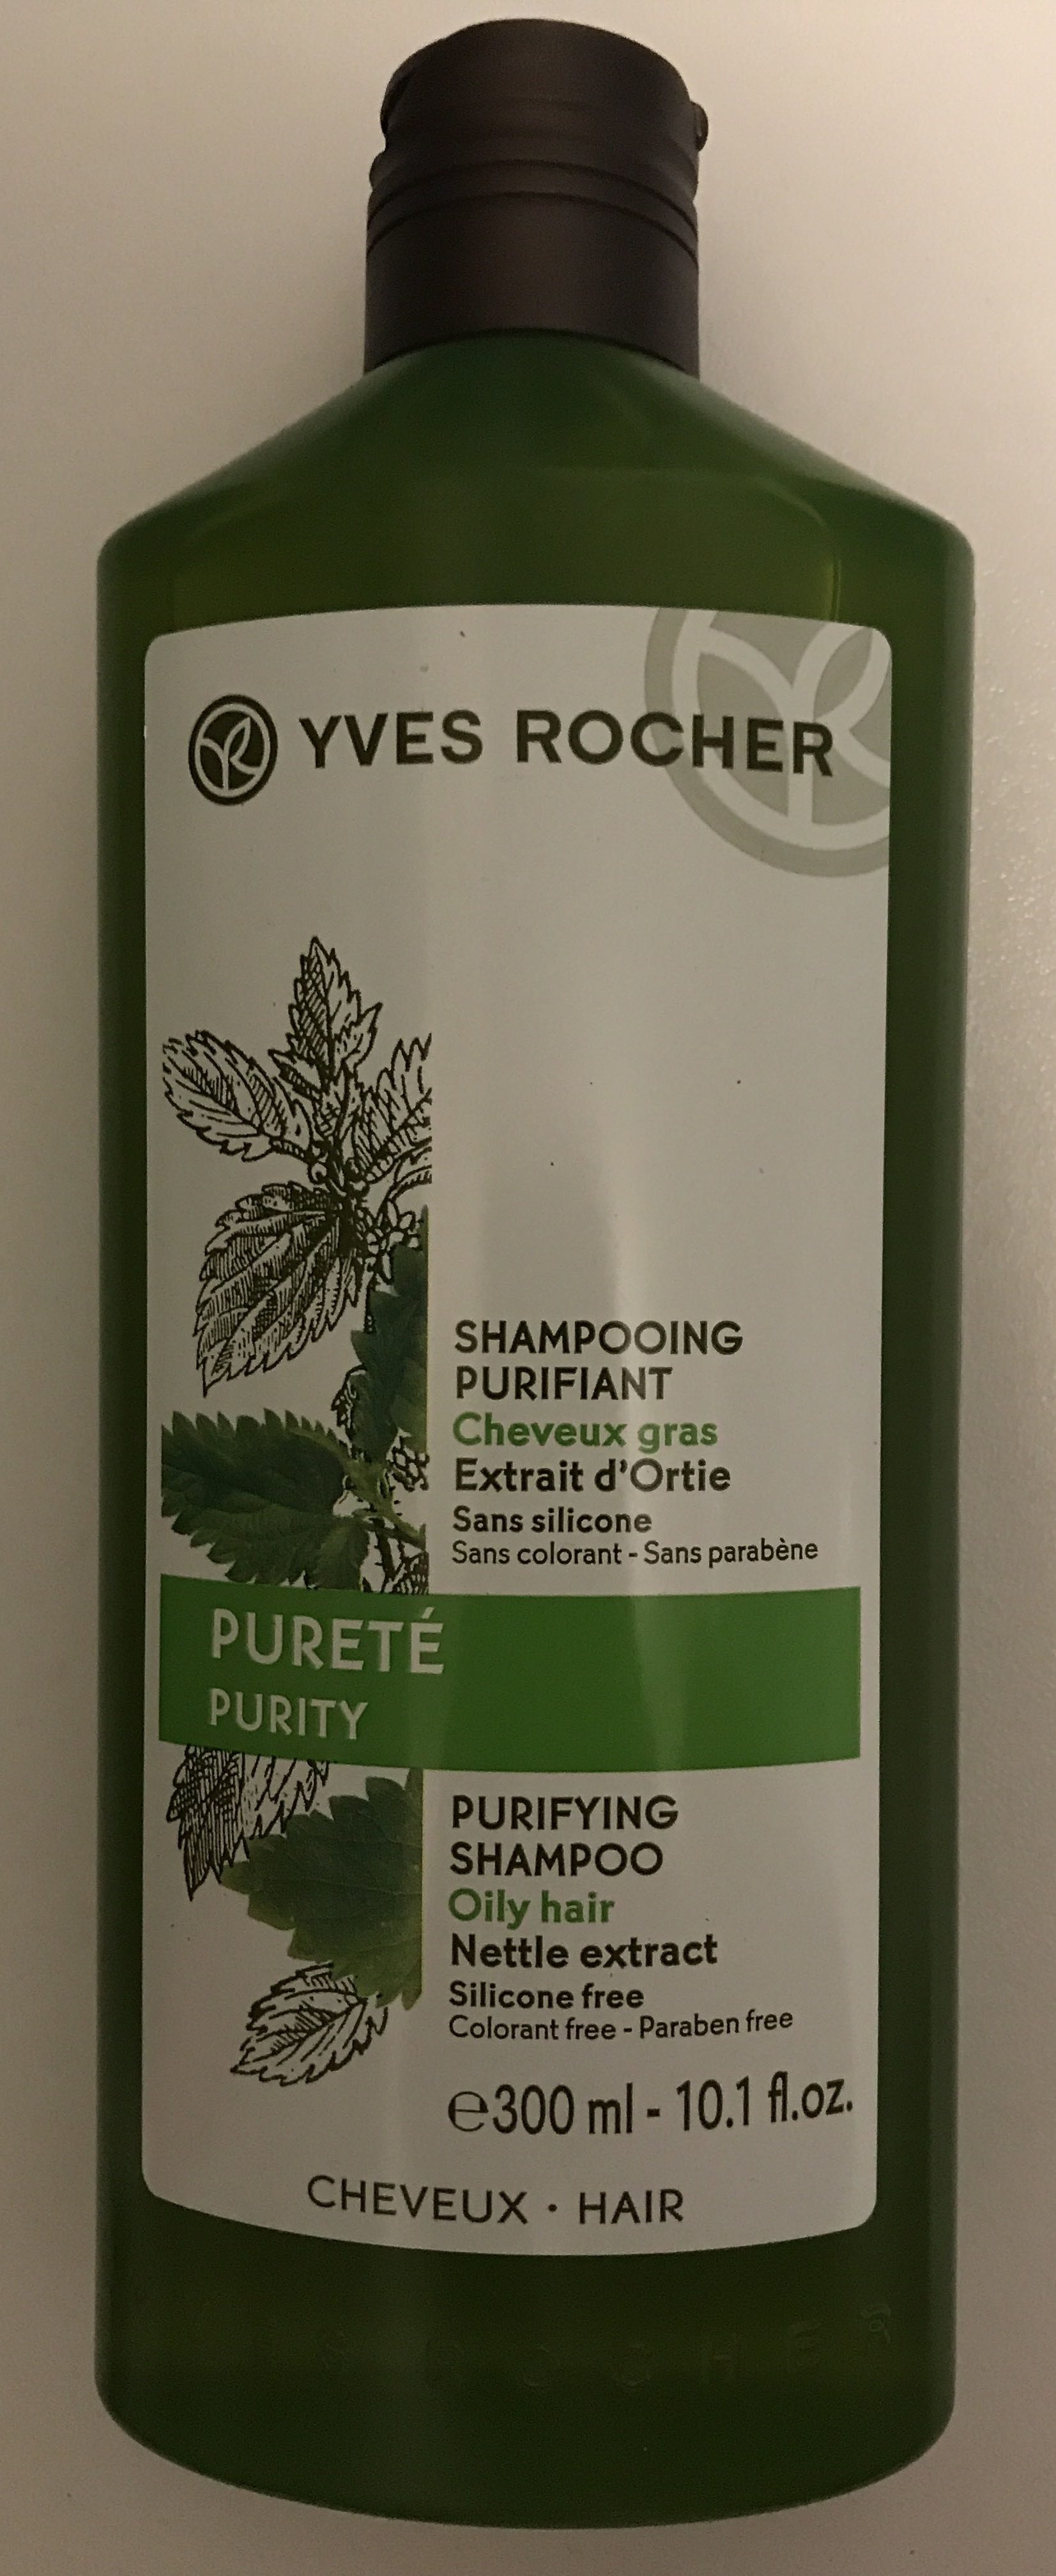 Shampooing purifiant - cheveux gras - Produit - fr